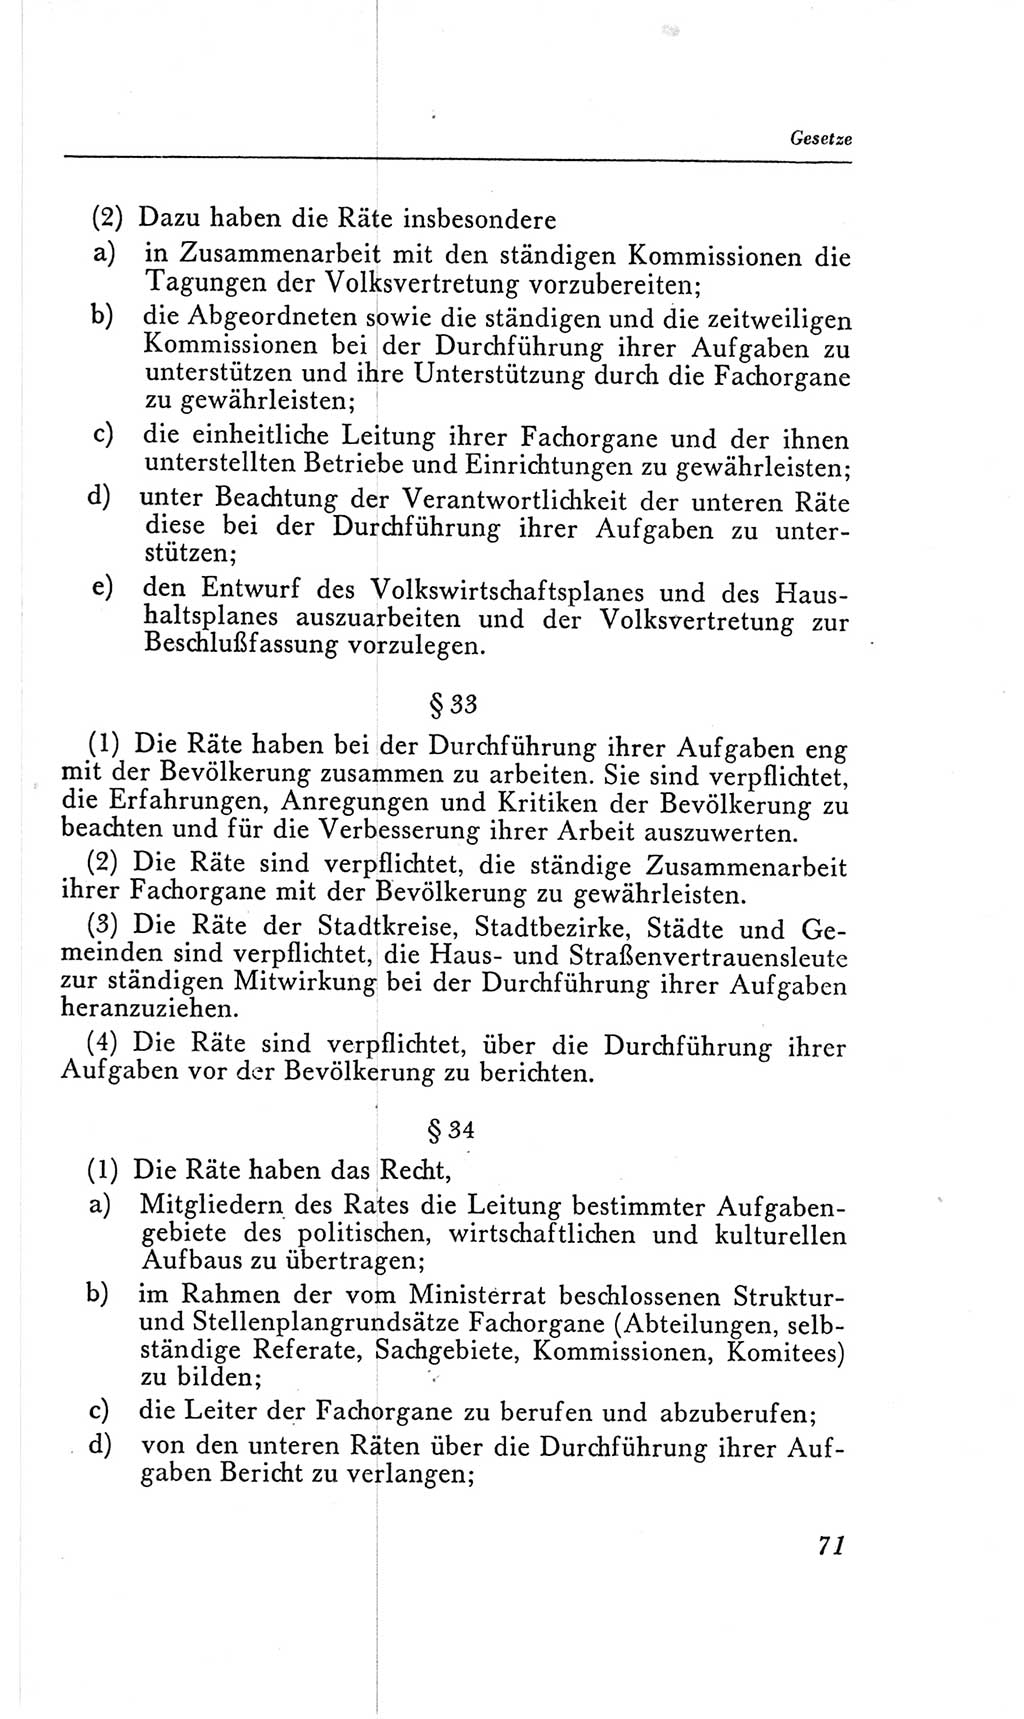 Handbuch der Volkskammer (VK) der Deutschen Demokratischen Republik (DDR), 2. Wahlperiode 1954-1958, Seite 71 (Hdb. VK. DDR, 2. WP. 1954-1958, S. 71)